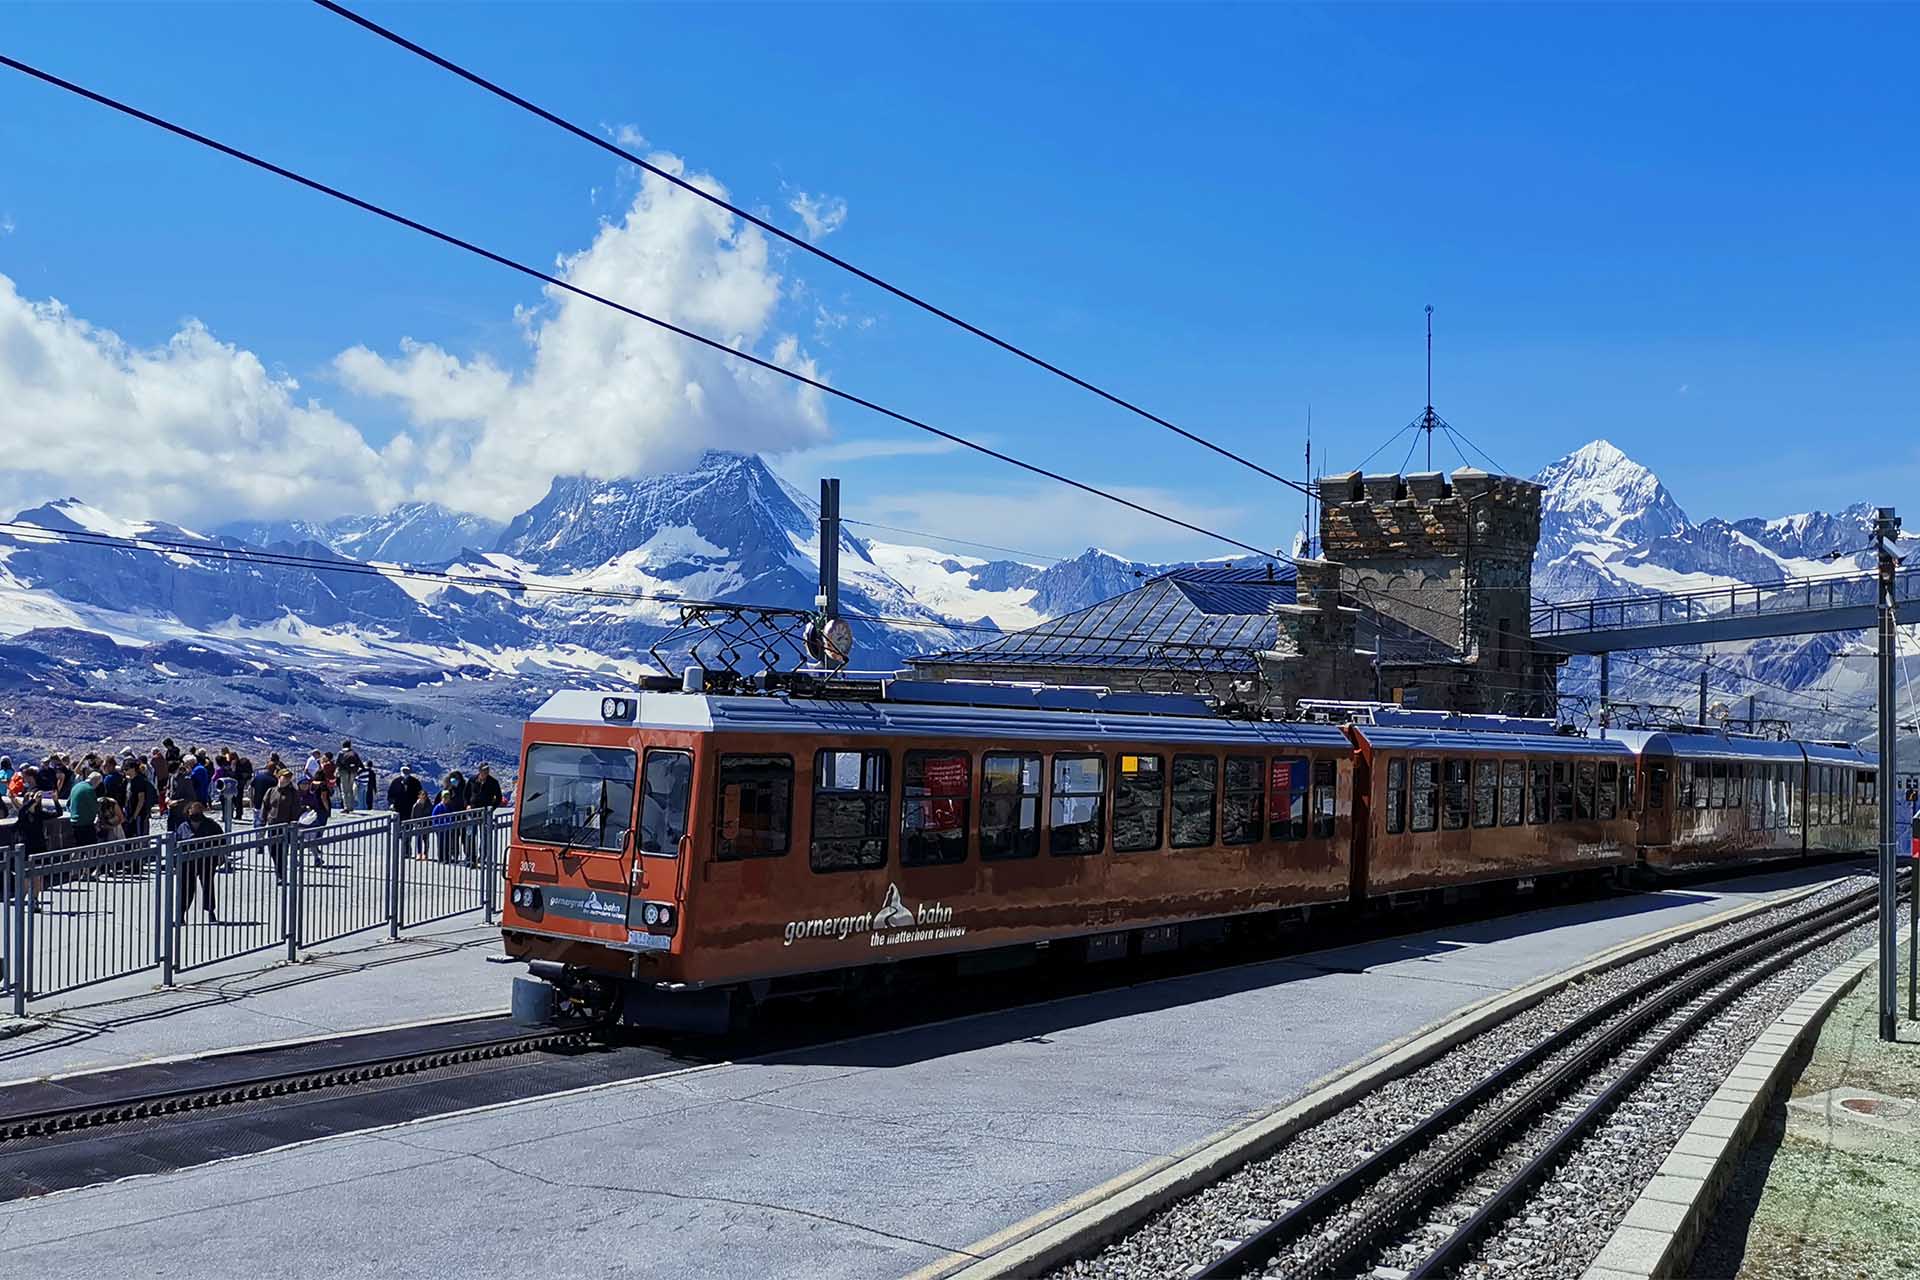 Die Gornergratbahn bringt die Menschen vom Dorf Zermatt auf den gleichnamigen Berg Gornergratt.